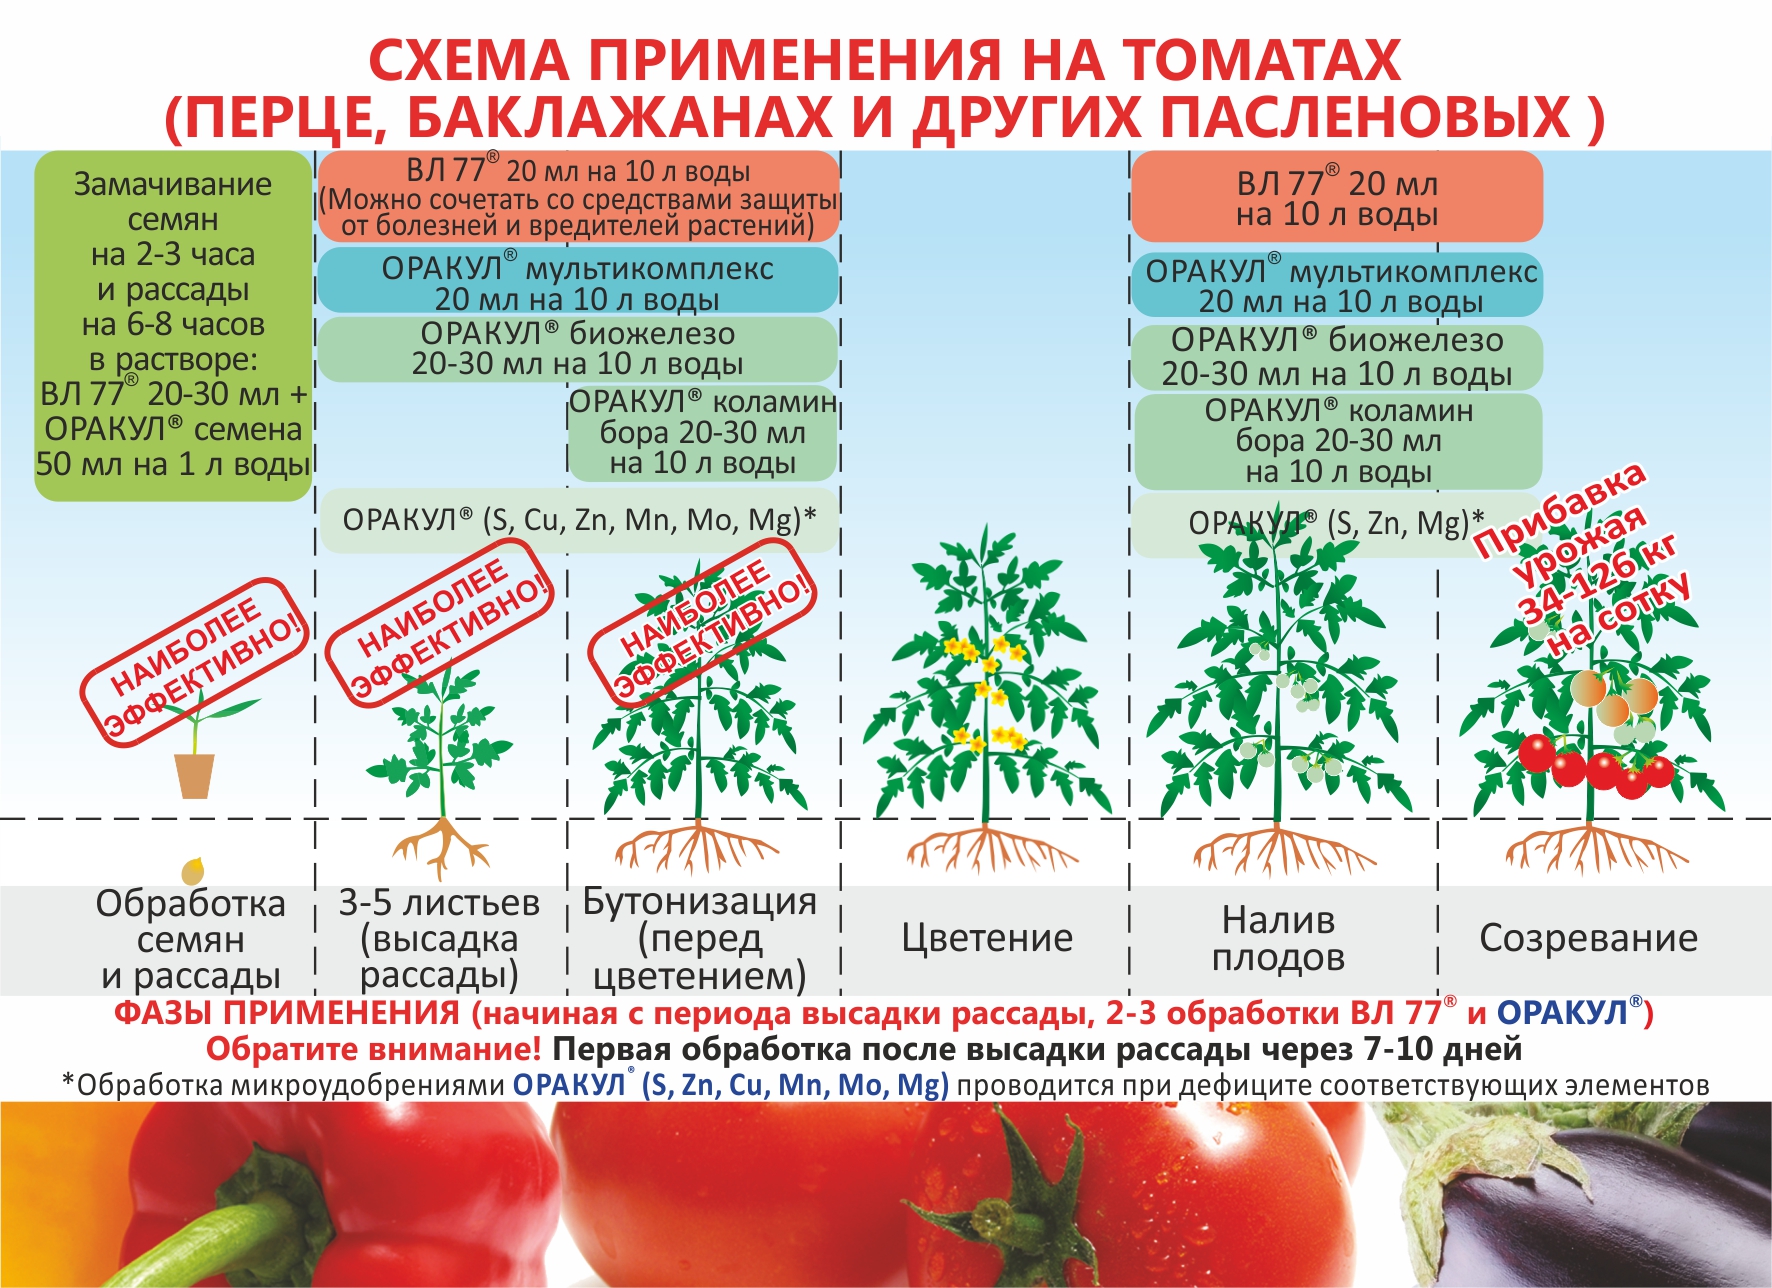 При какой температуре выращивать рассаду помидоров оптимально в домашних условиях, а также каковы требования к минимальному режиму по градусам при посадке томатов? русский фермер